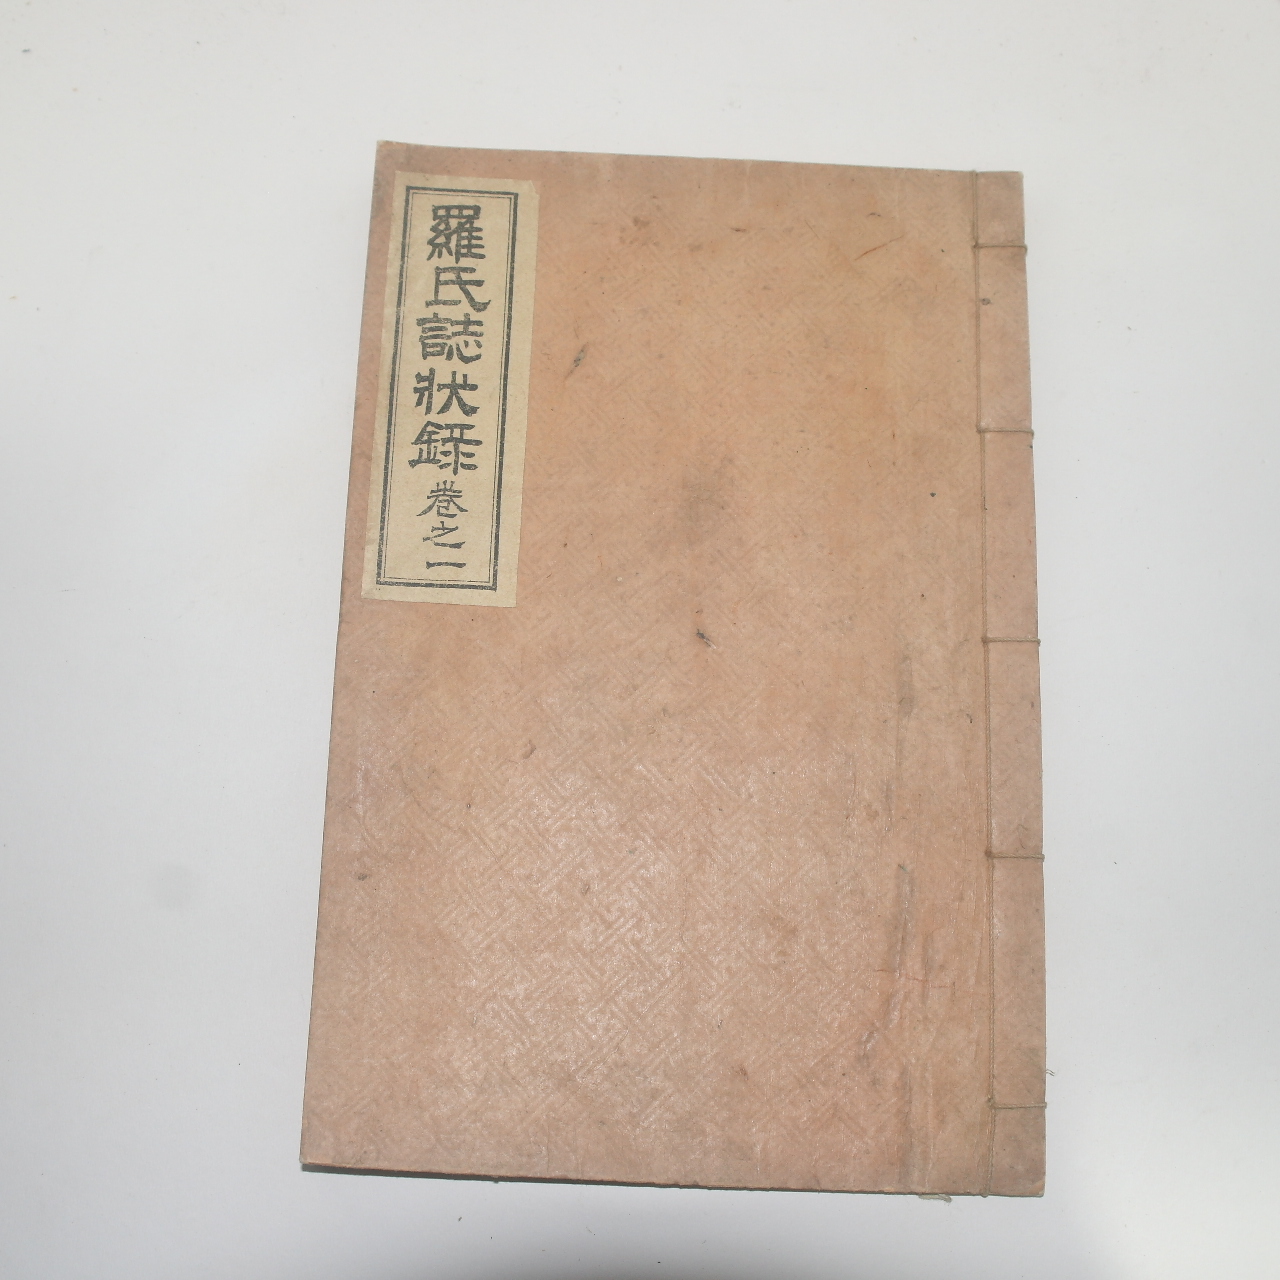 1927년 석판본 나씨지장록(羅氏誌狀錄)권1  1책